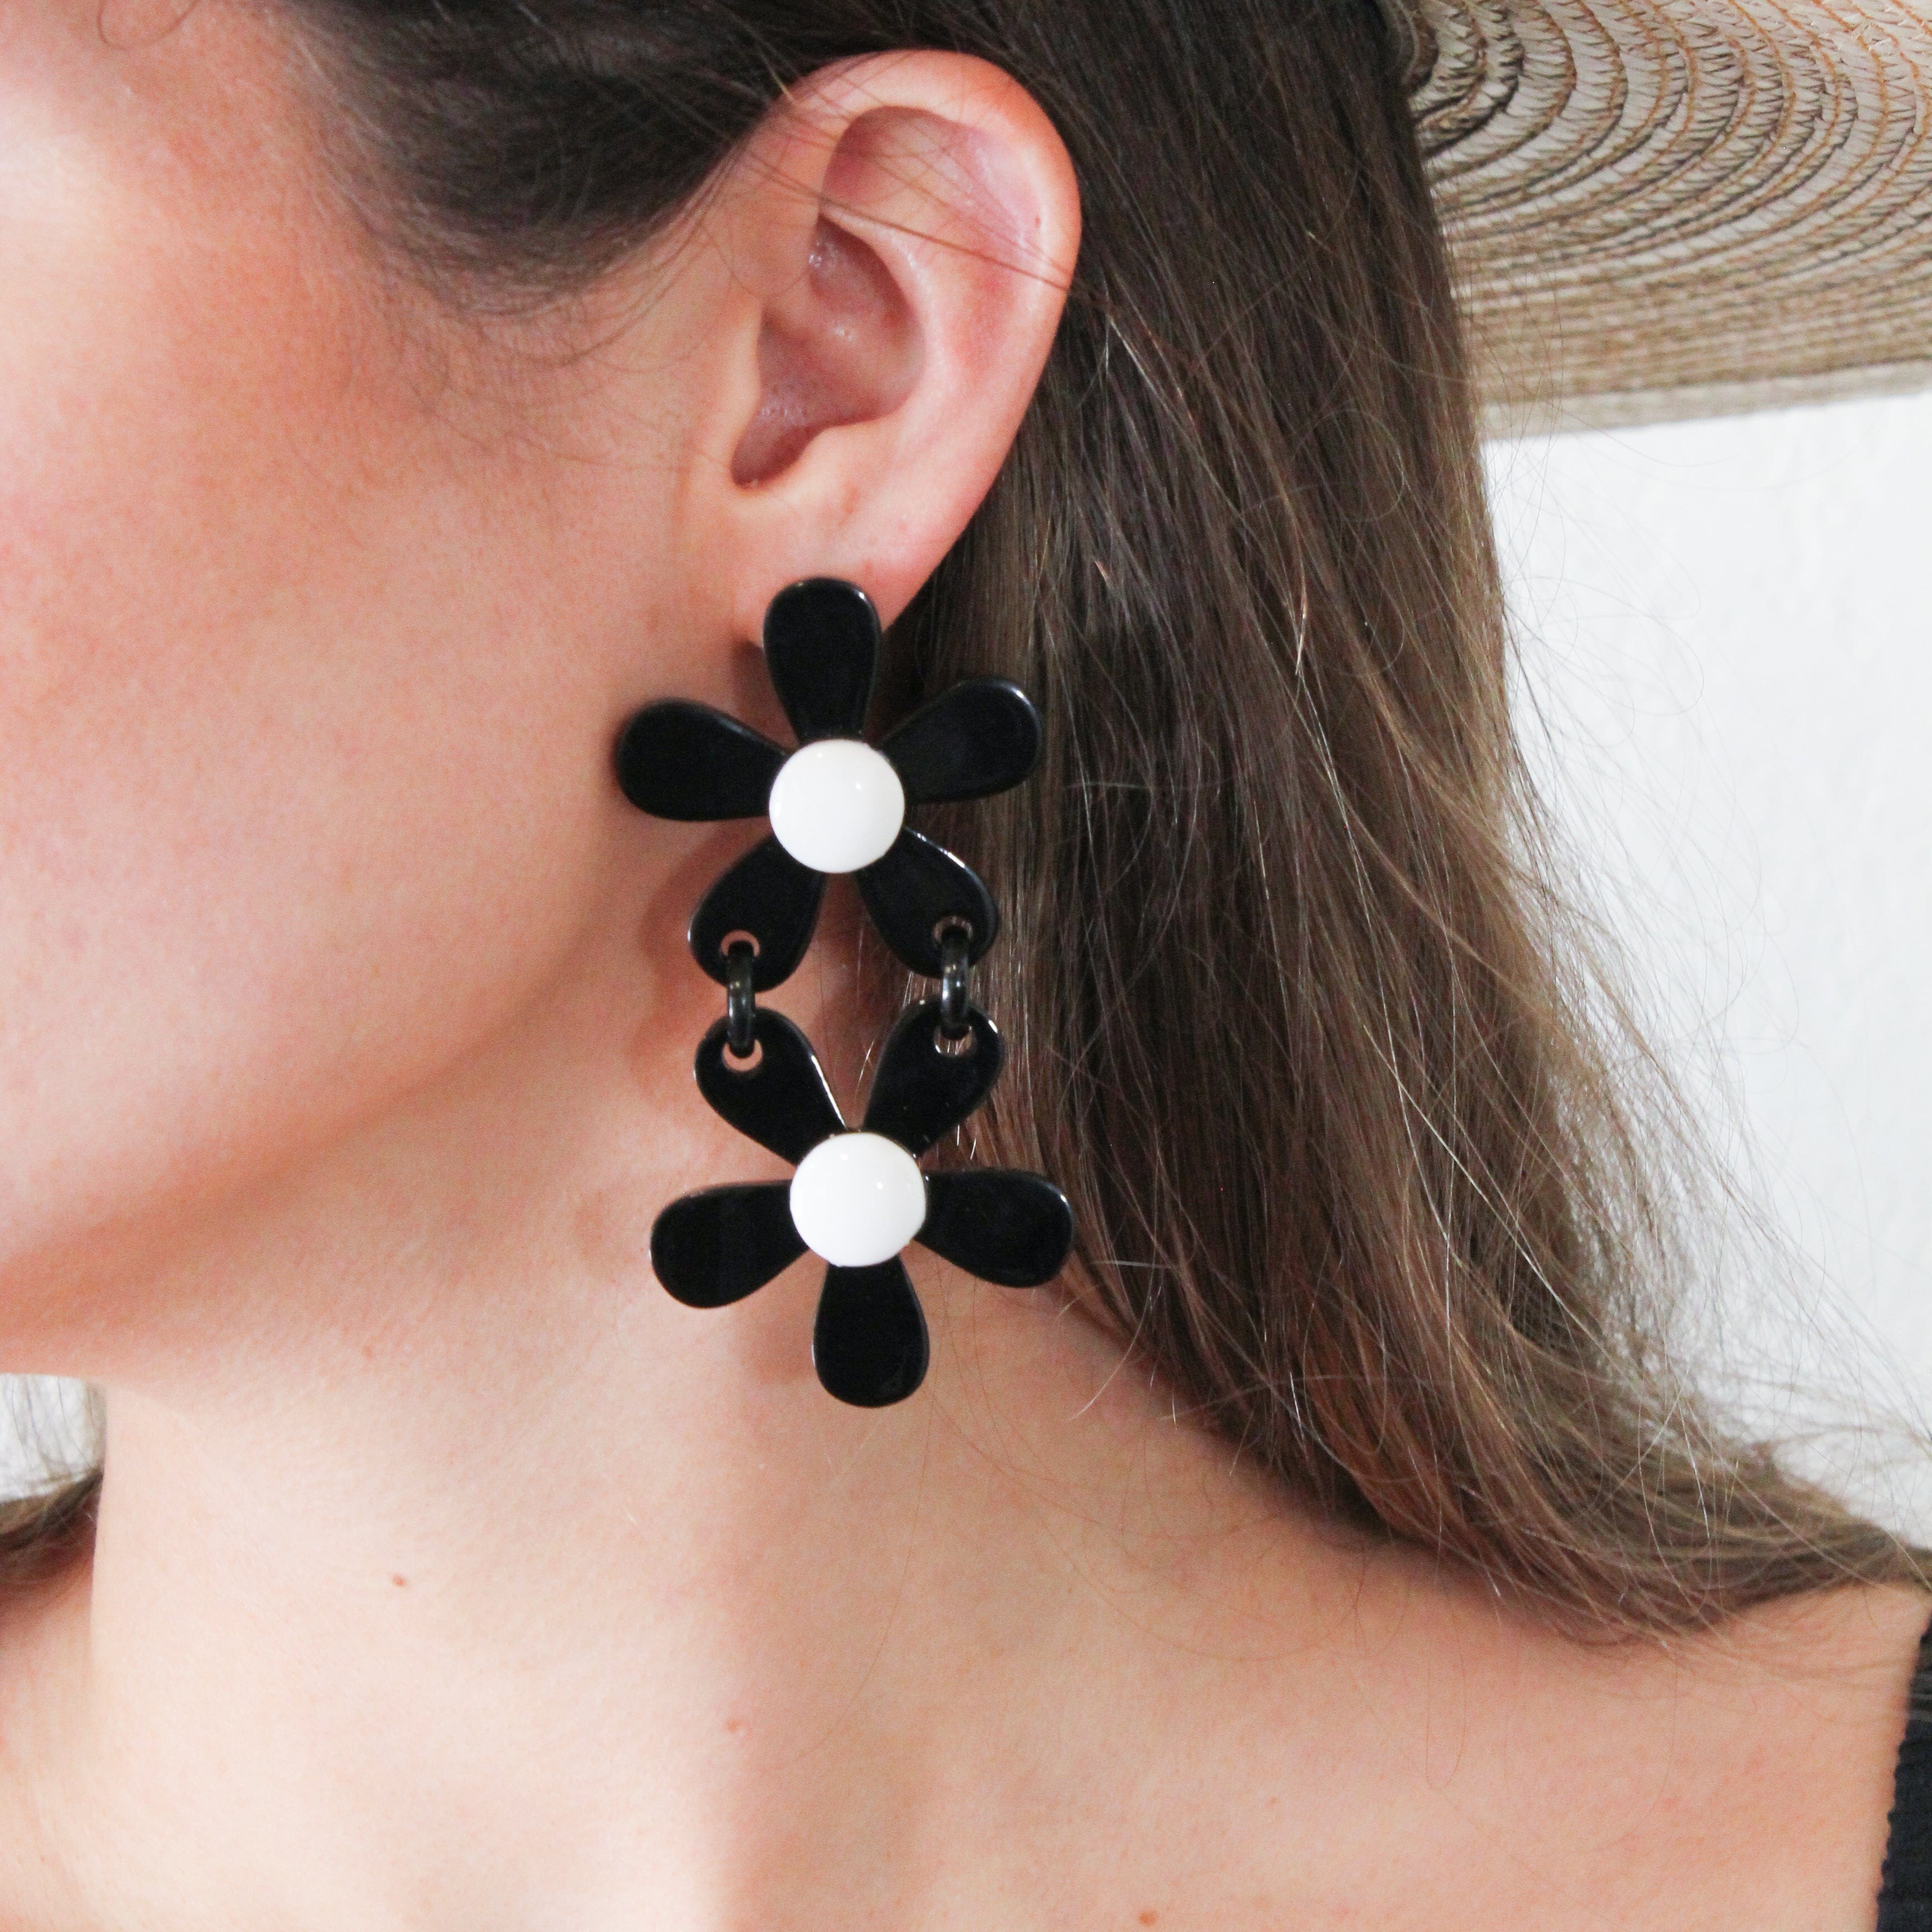 The Sensitive White Flower Earrings – Stylish Looks